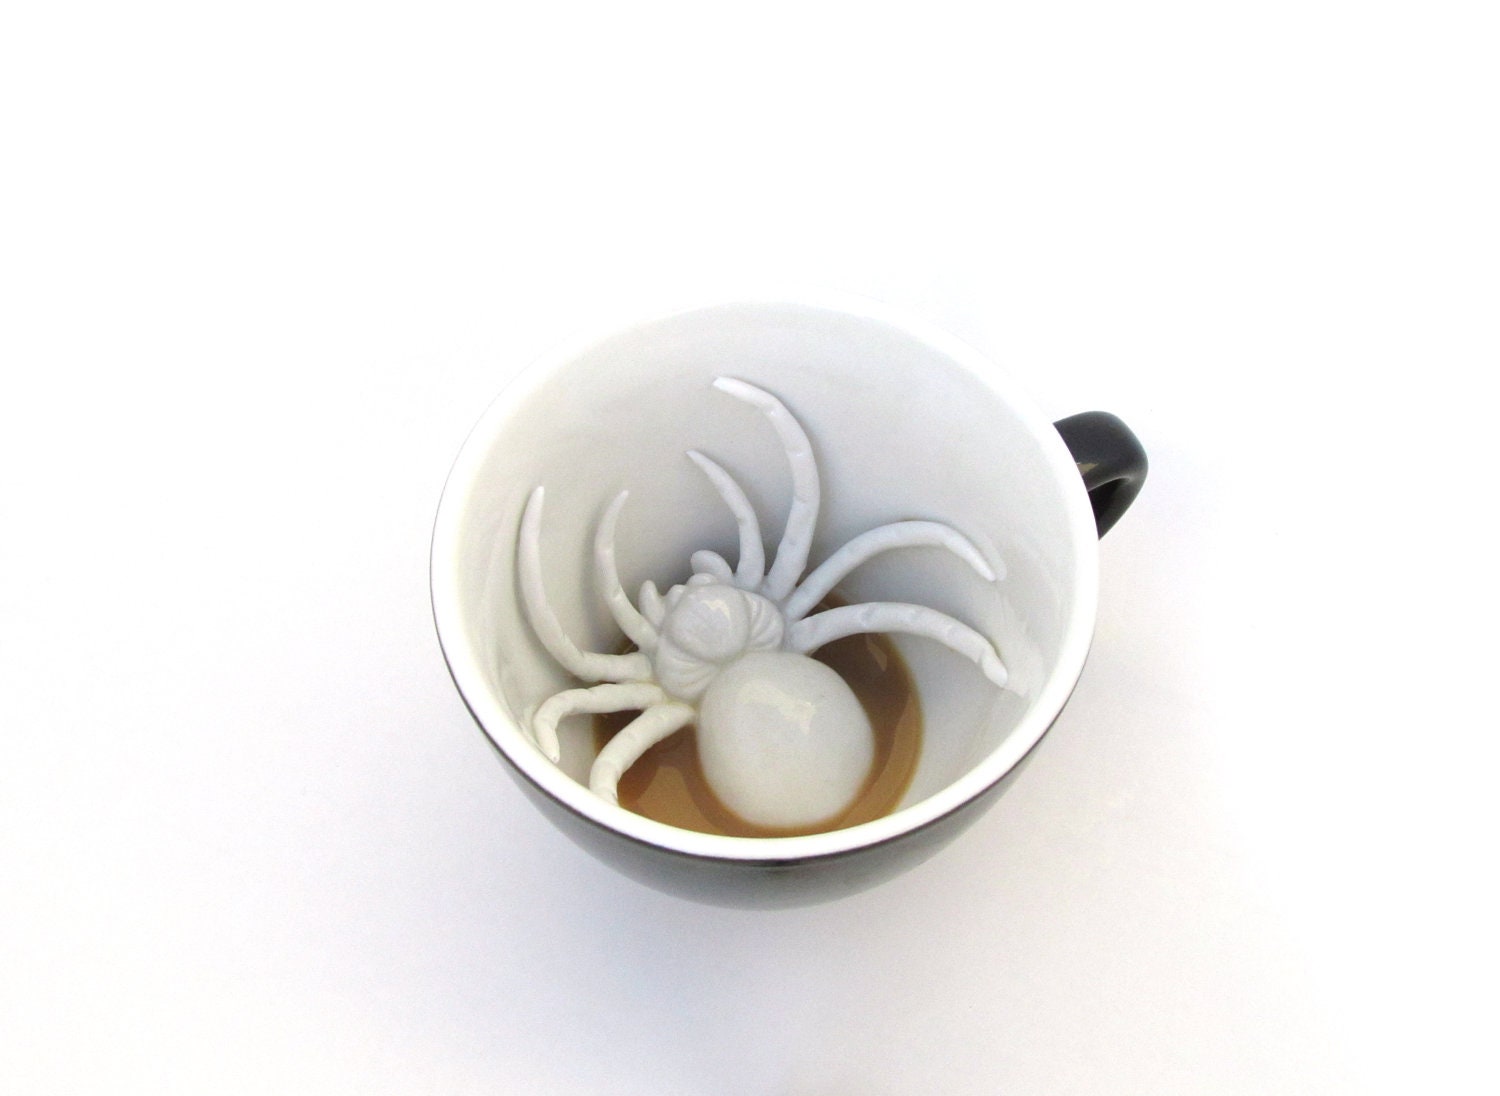 Spider Creepy Cup - creaturecups